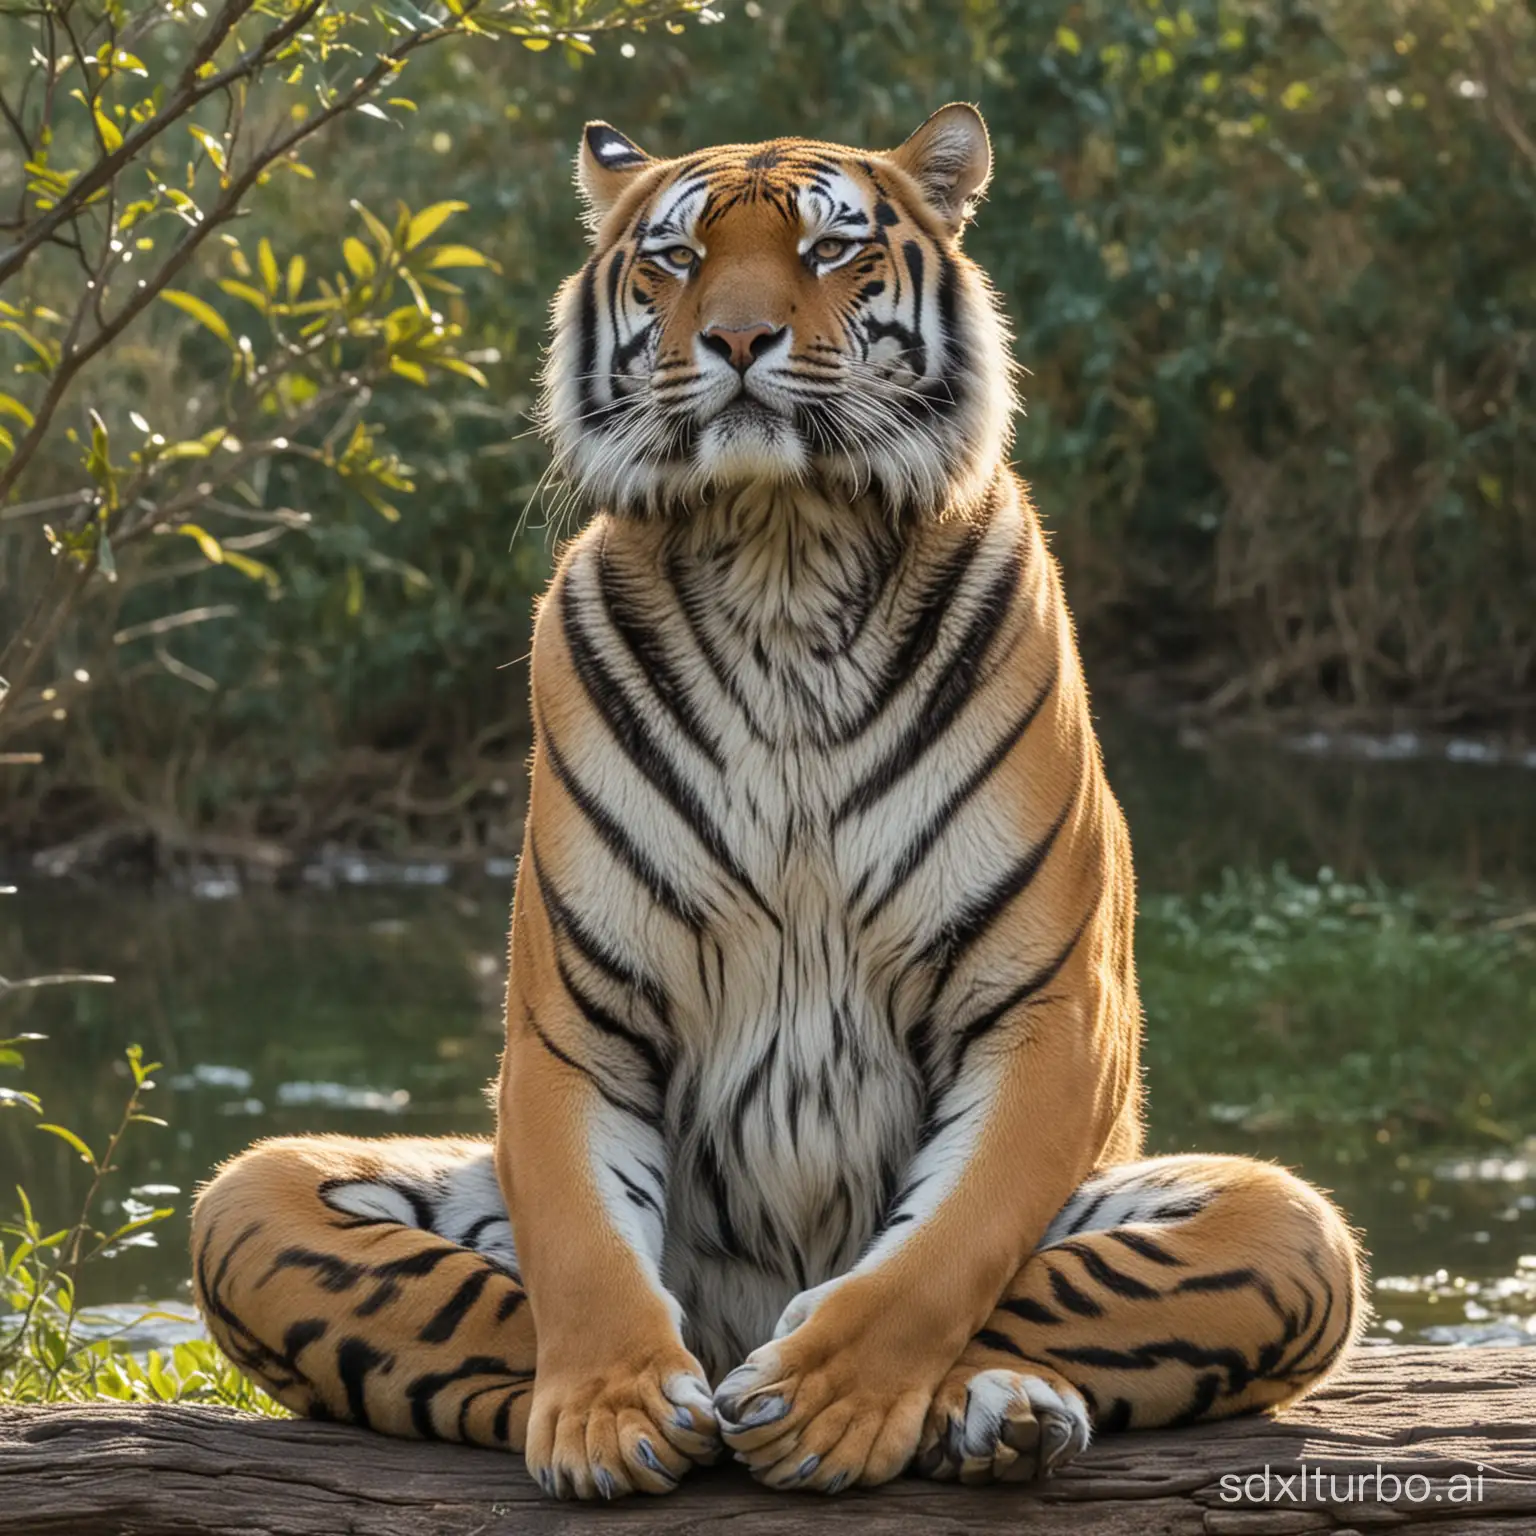 The tiger meditating